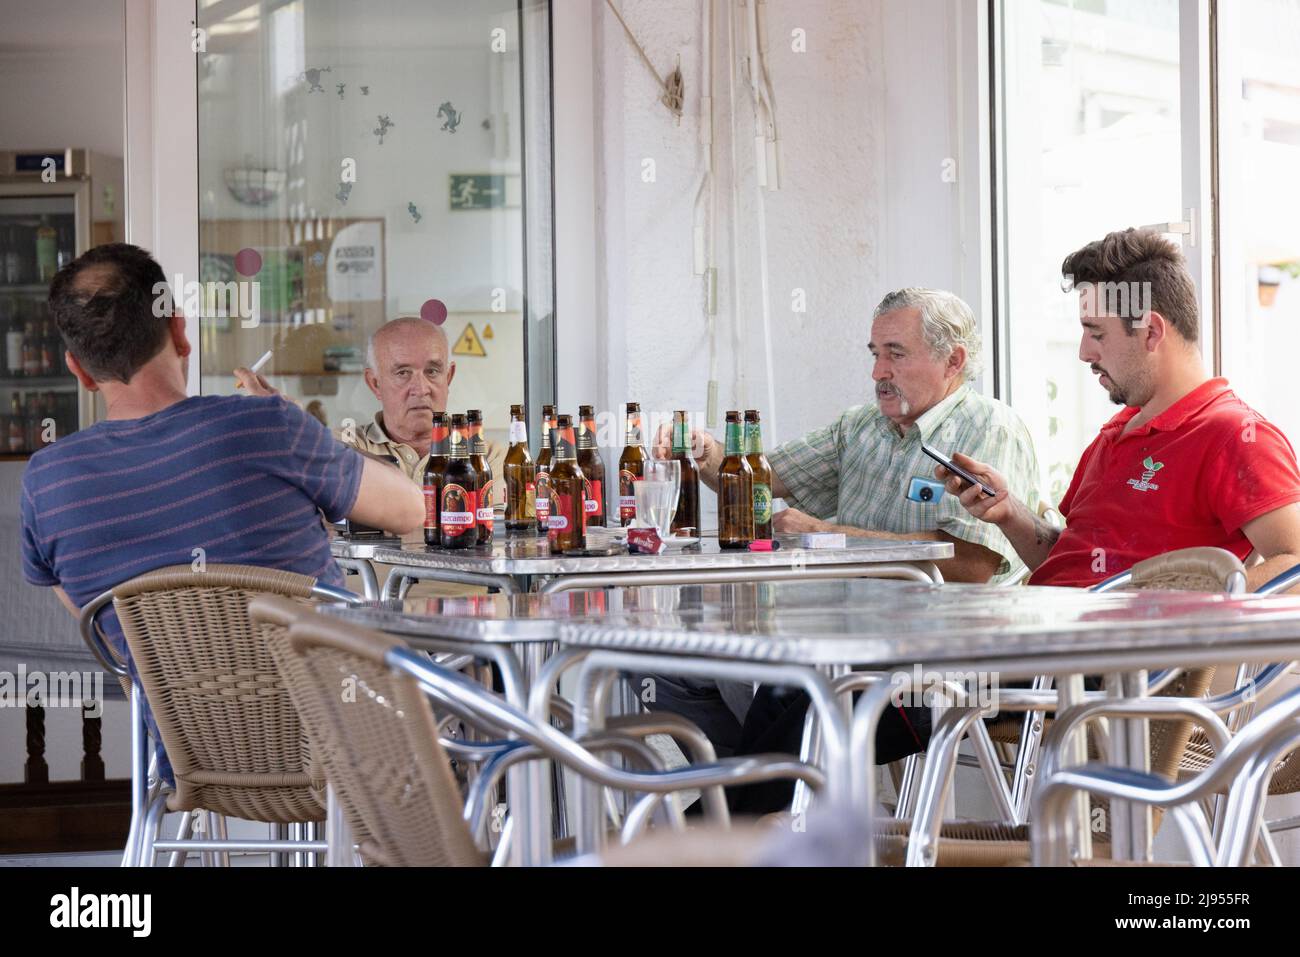 Spanischer Lebensstil; Eine Gruppe von Männern mittleren Alters, die tagsüber an einem Tisch sitzen und in einer Bar Bier trinken, Andalusien, Spanien, Europa Stockfoto